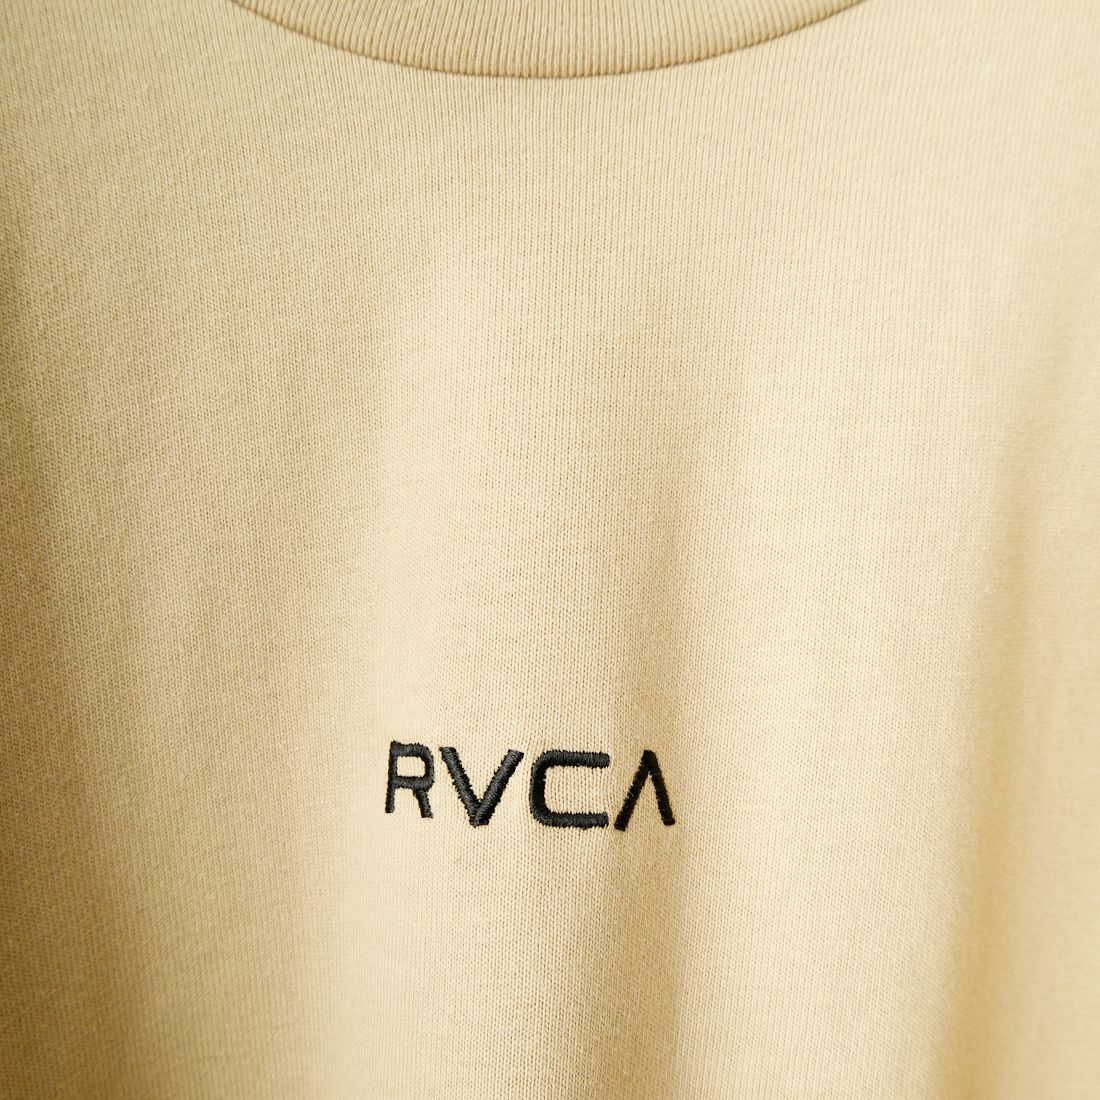 RVCA [ルーカ] ビッグロゴ ロングスリーブTシャツ [BE041-057] KHA